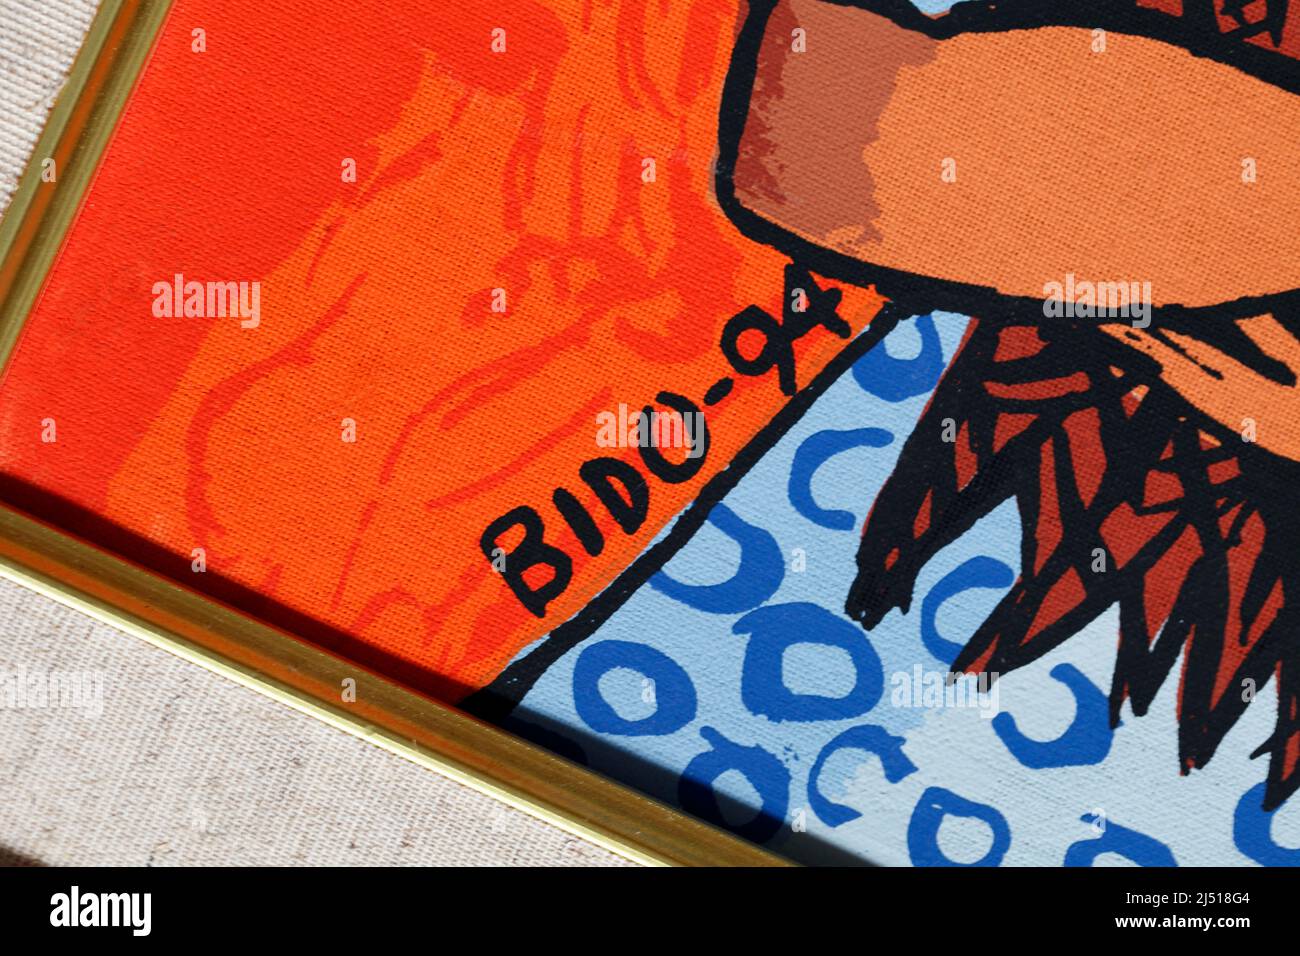 Leinwand-Siebdruck von Candido Bido, typisch für seinen Stil, mit leuchtenden Farbstoffen, der Sonne und einer Frau aus der Dominikanischen Republik, die hier 9 Fische hält Stockfoto